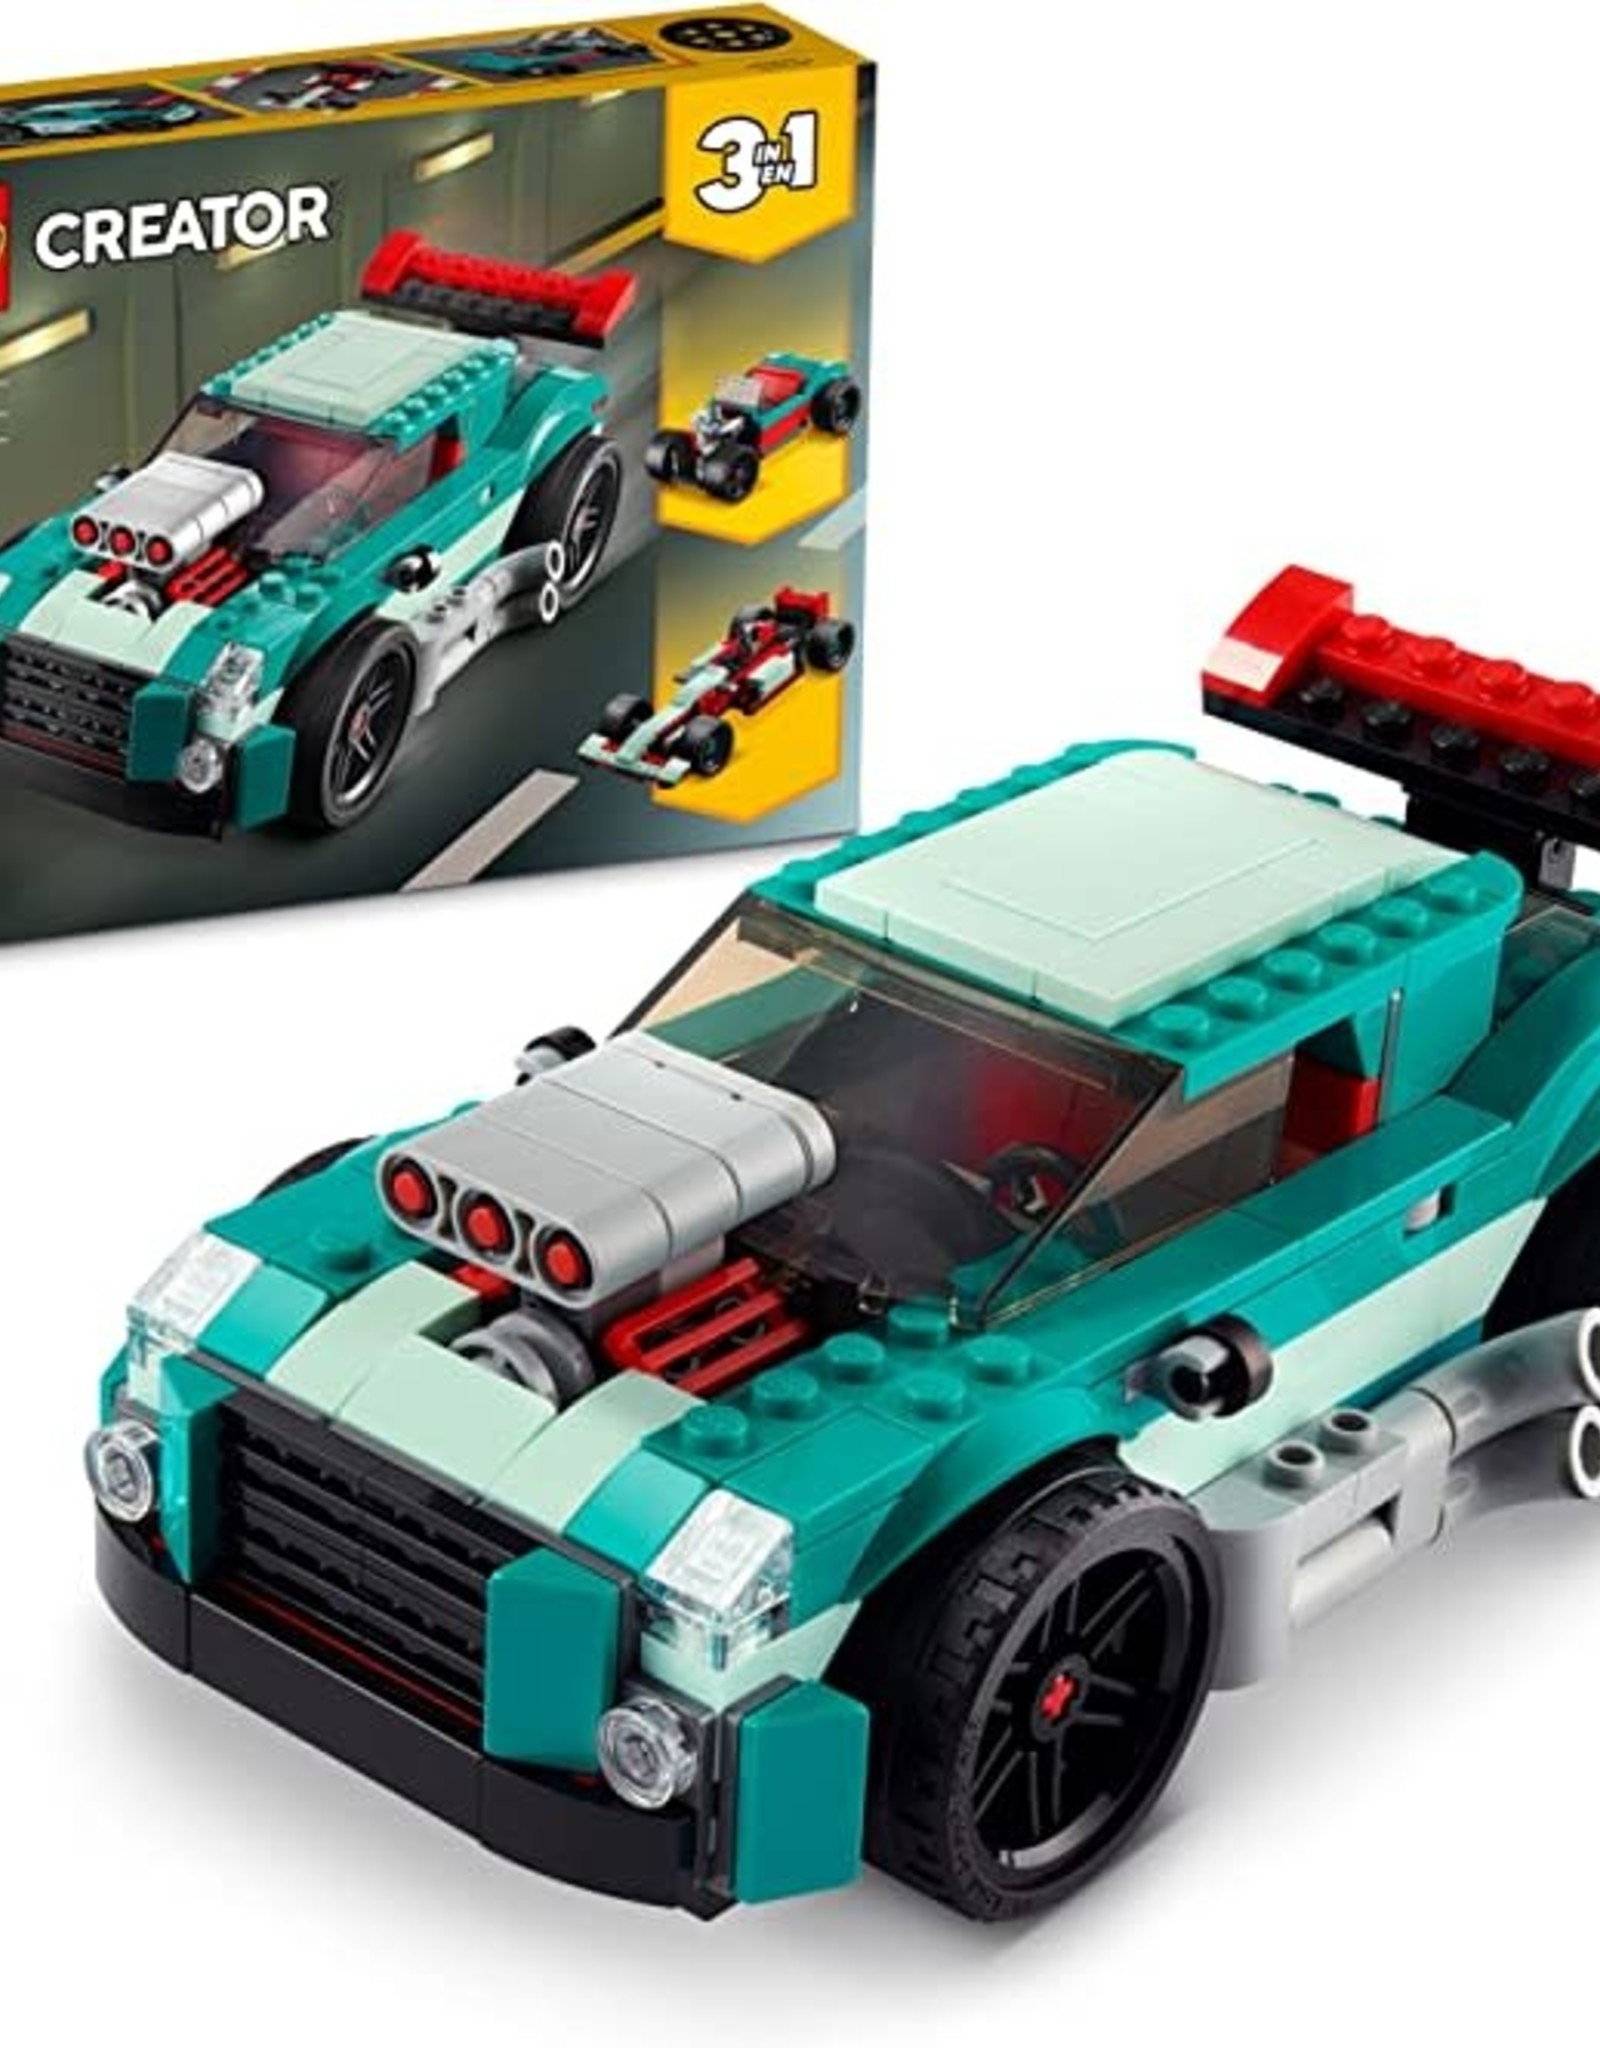 LEGO 31127 Street Racer